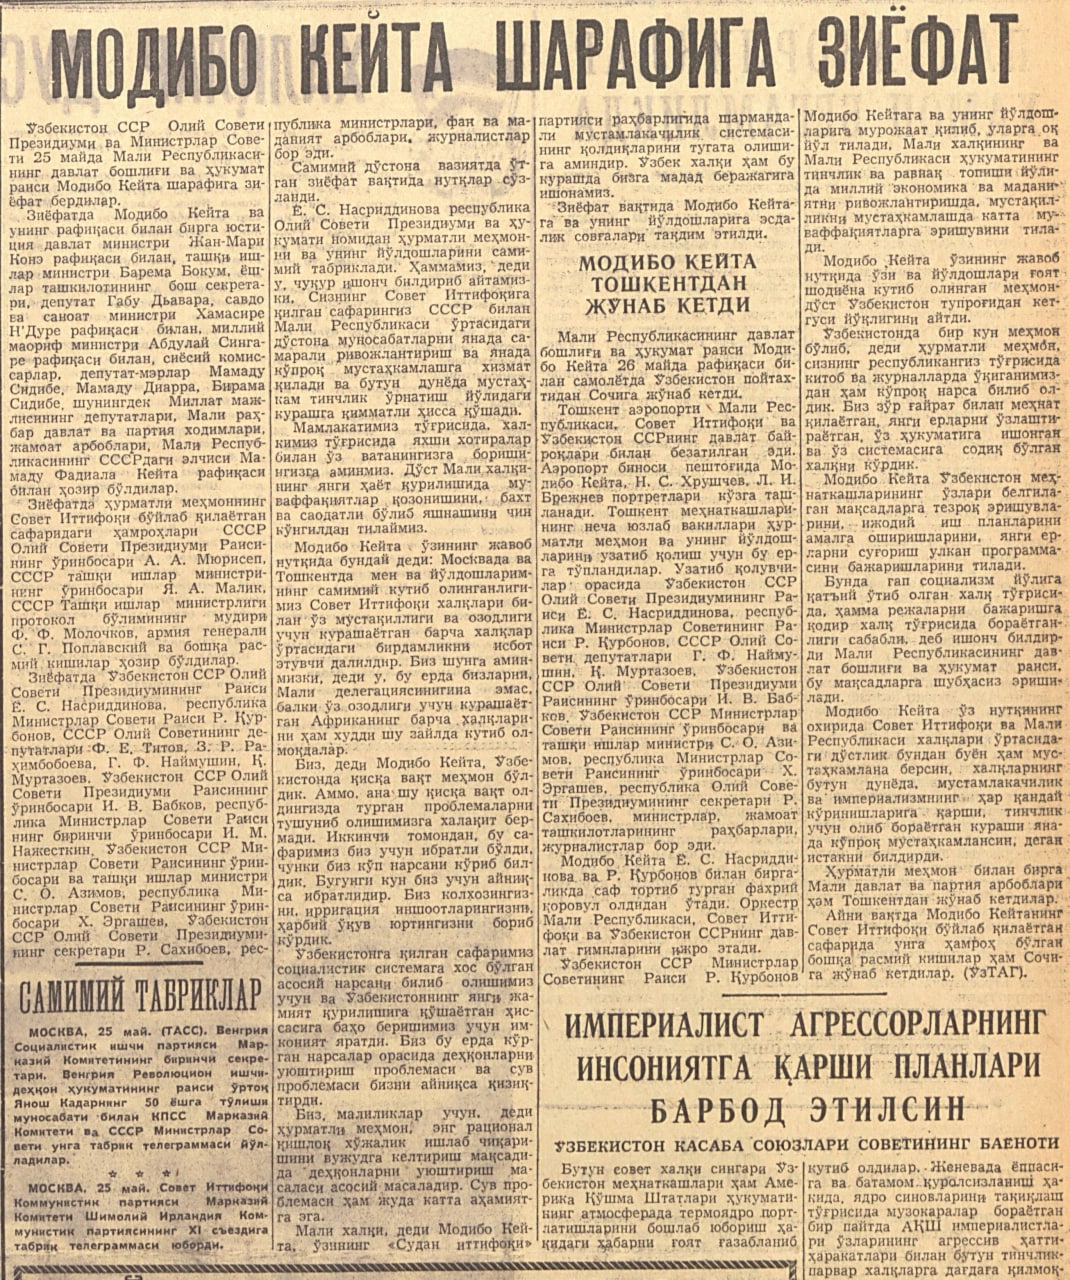 “Qizil O‘zbekiston” gazetasining 1962-yil 27-may sonidan lavha